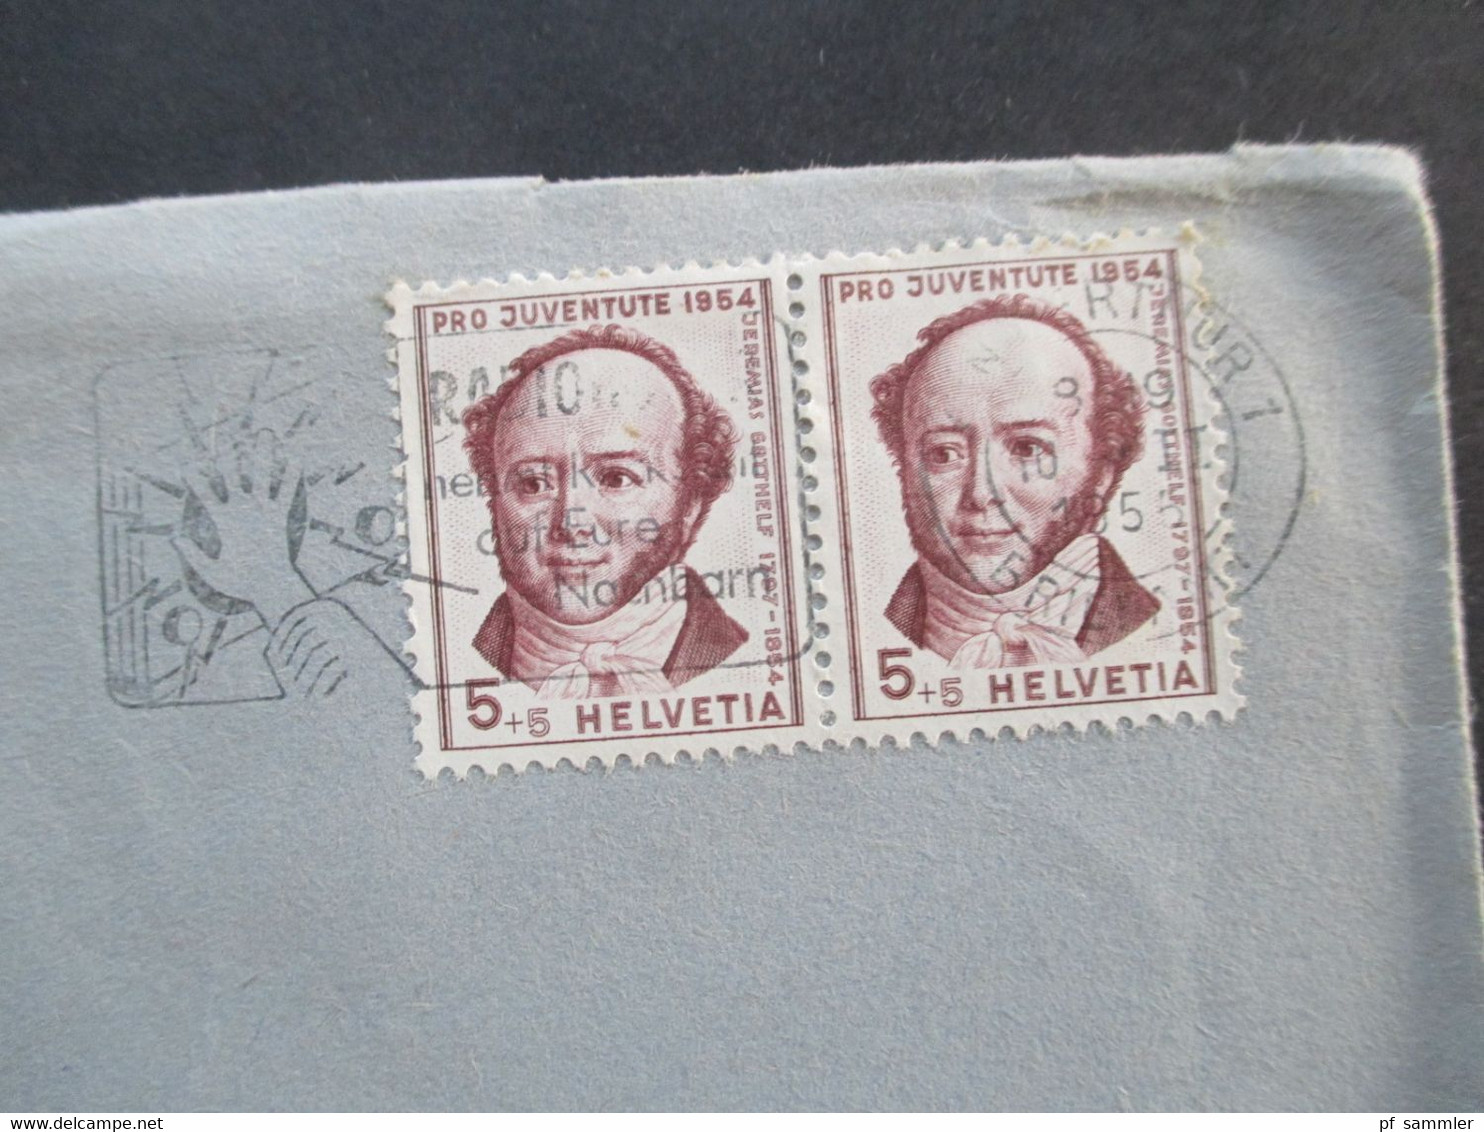 Schweiz 1955 Pro Juventute Nr. 602 MeF Waagerechtes Paar Umschlag Ed. Bühler & Co Winterthur Ortsbrief - Briefe U. Dokumente